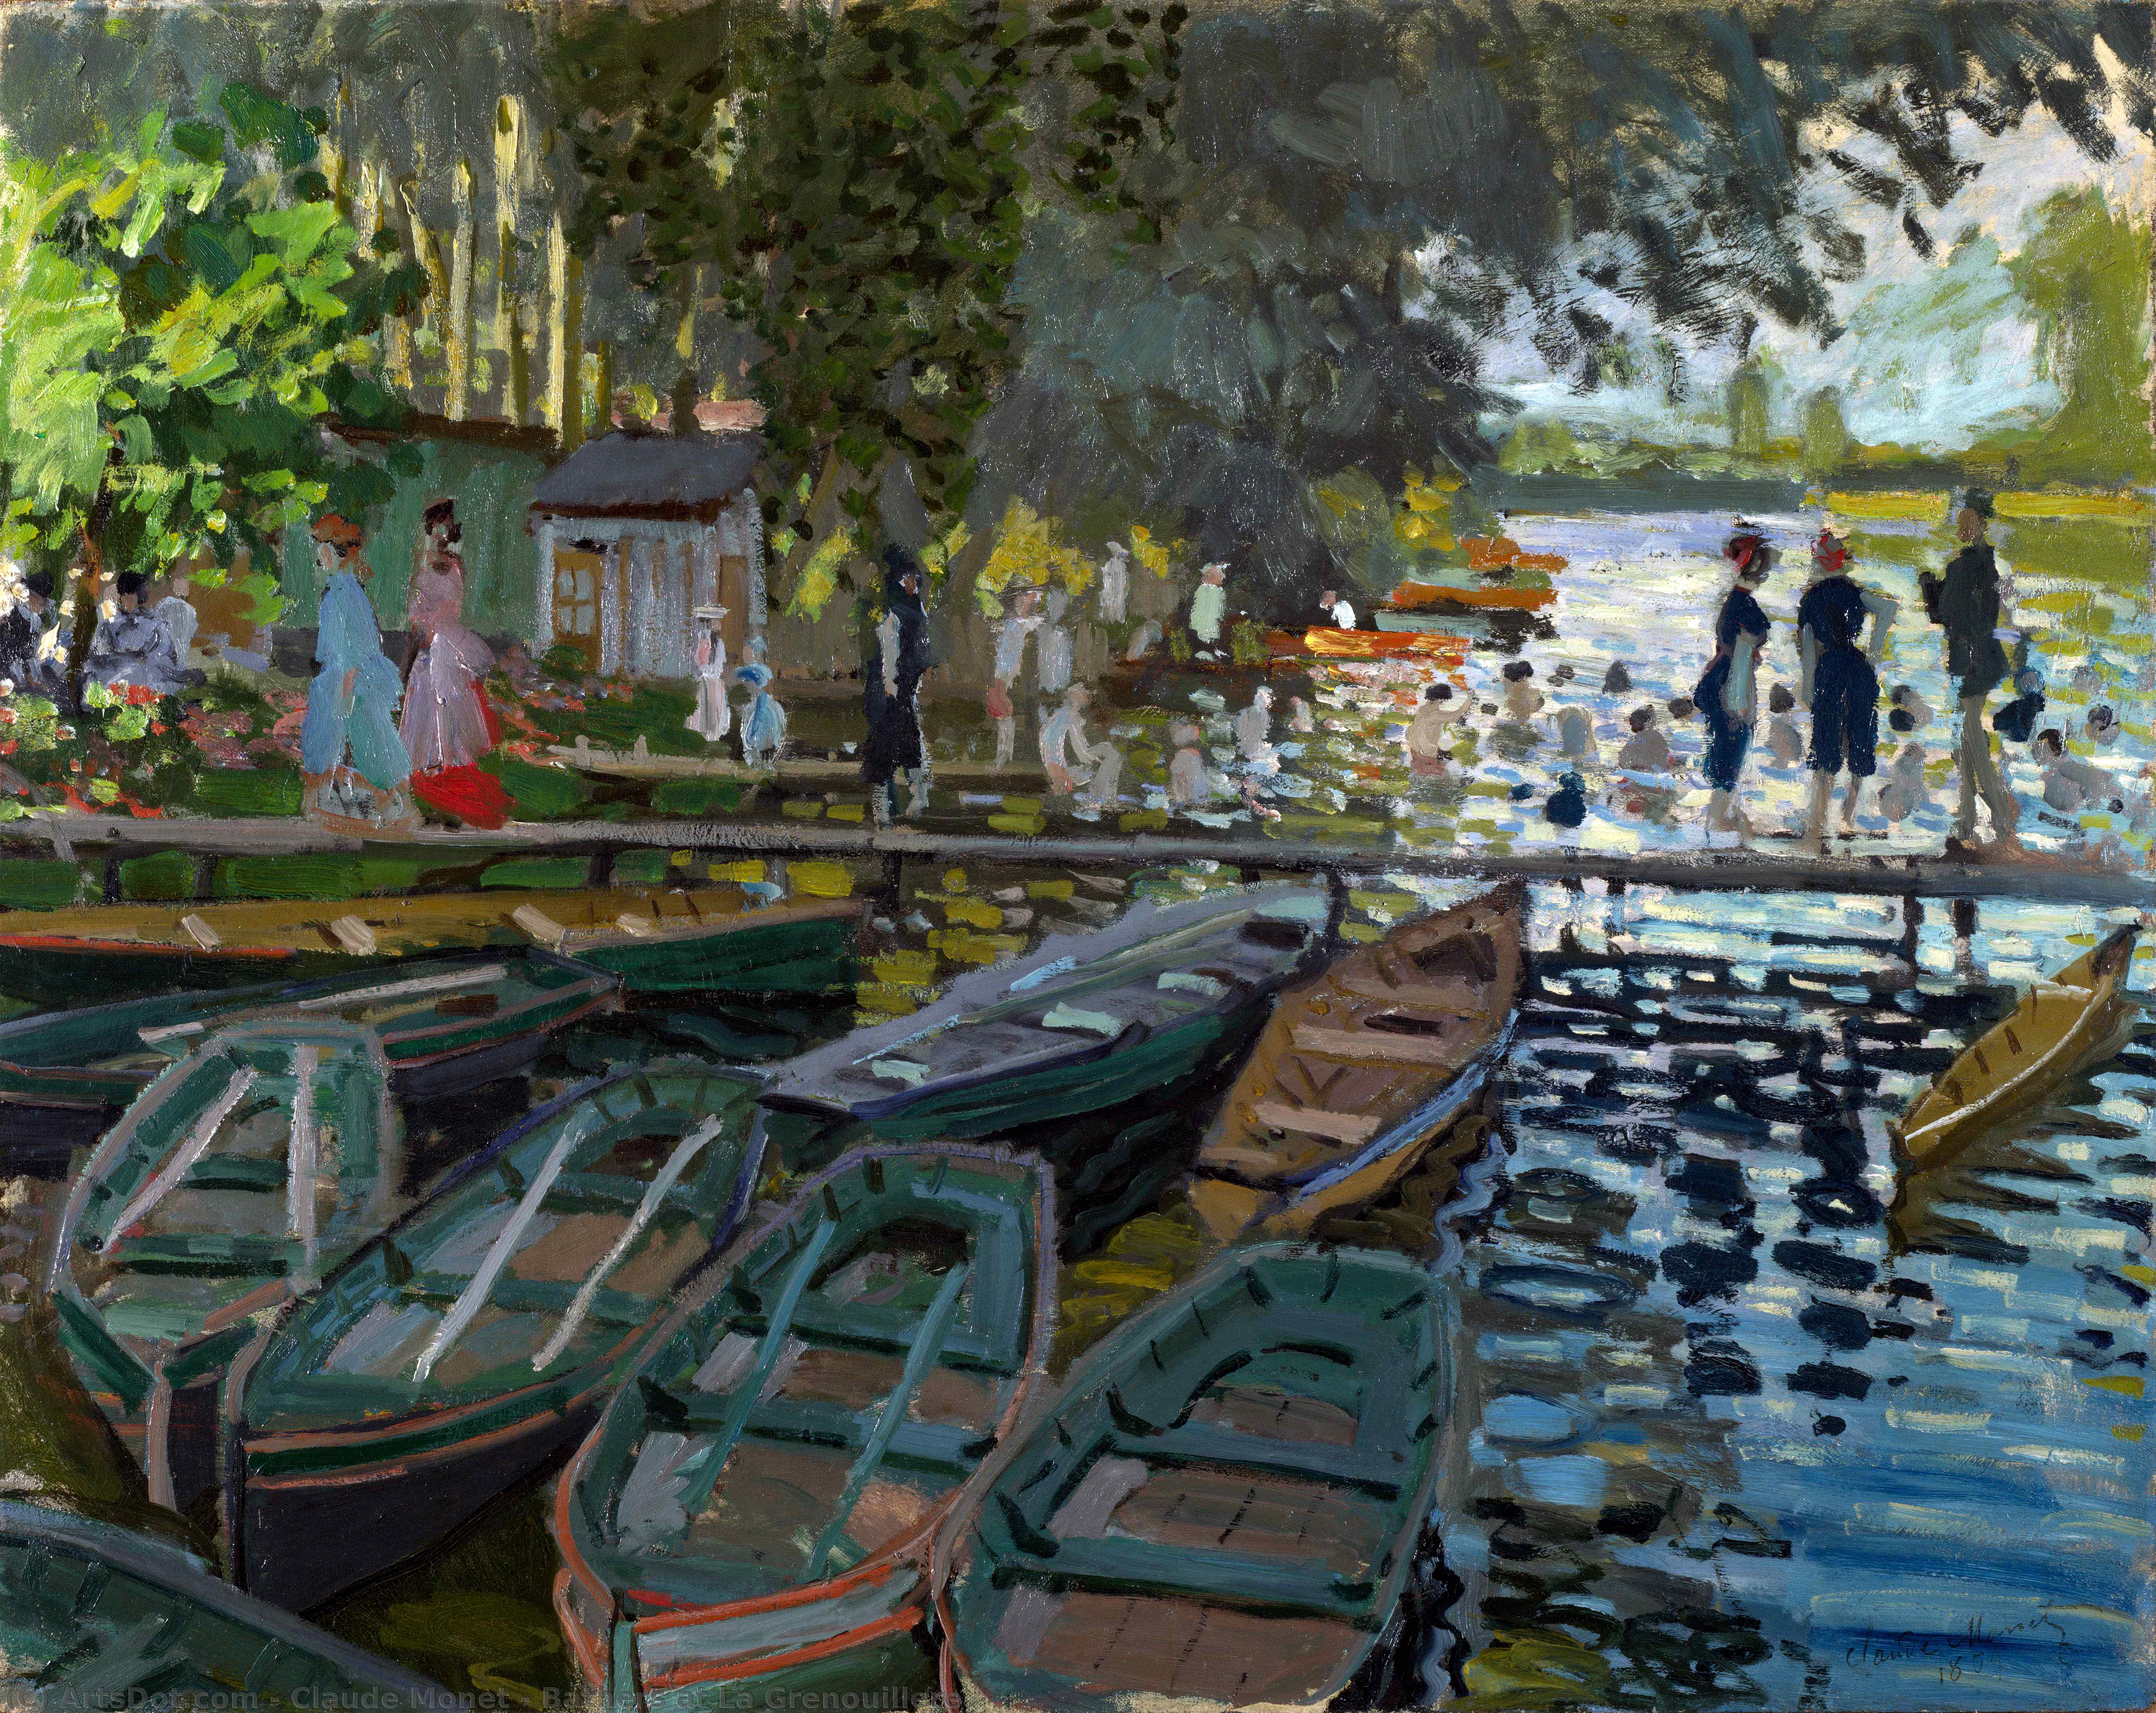 Comprar Reproducciones De Arte Del Museo Baños en La Grenouillere, 1869 de Claude Monet (1840-1926, France) | ArtsDot.com